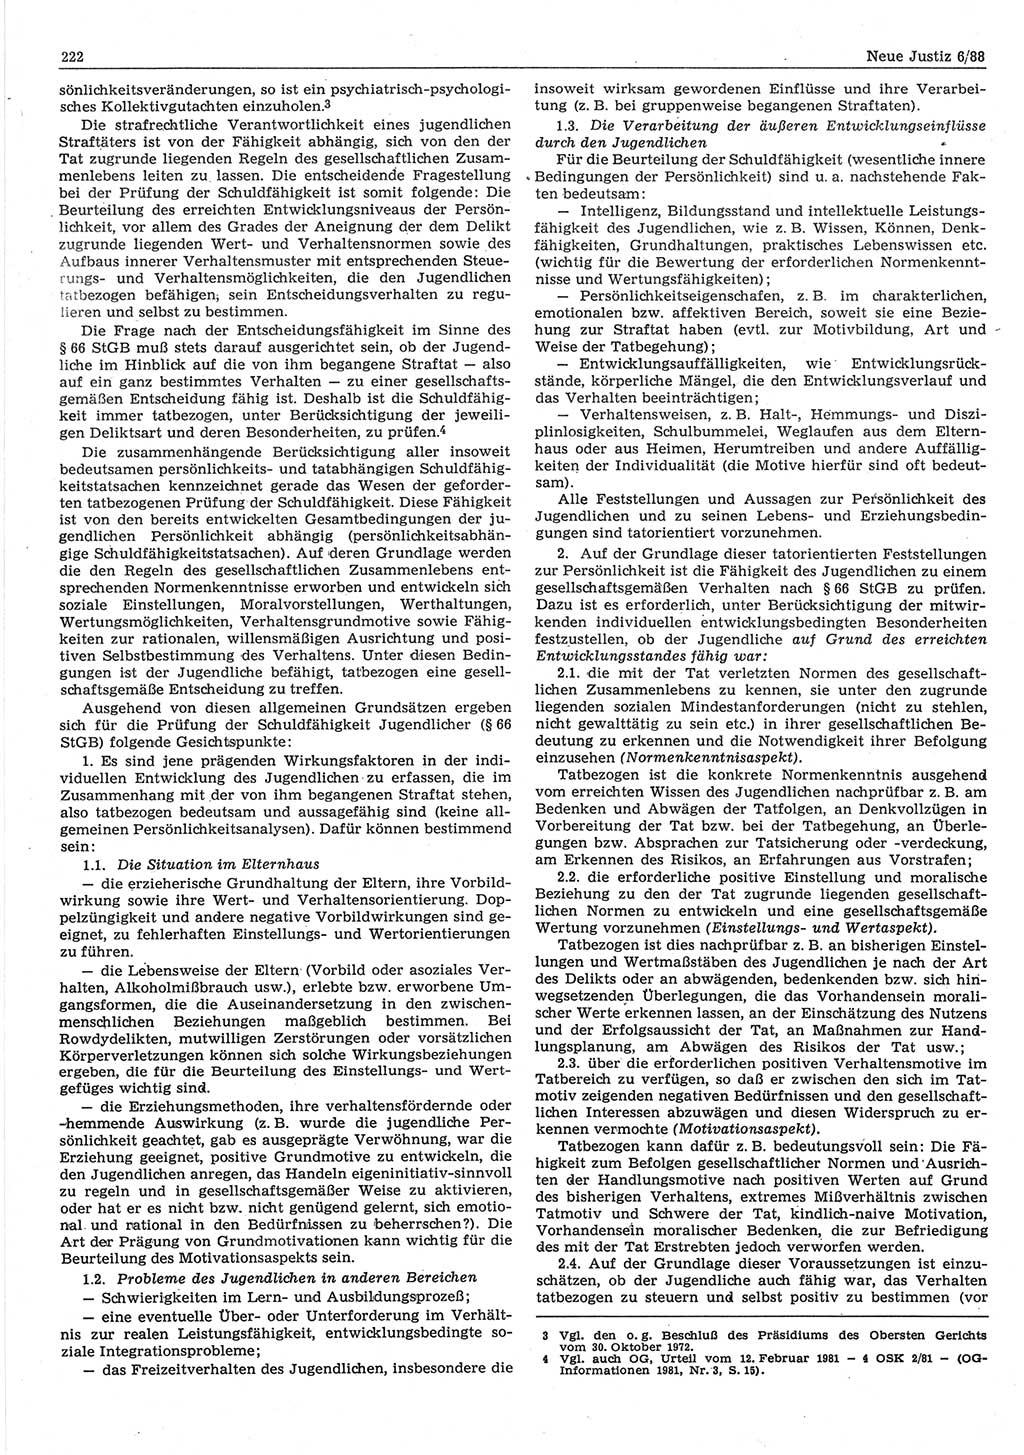 Neue Justiz (NJ), Zeitschrift für sozialistisches Recht und Gesetzlichkeit [Deutsche Demokratische Republik (DDR)], 42. Jahrgang 1988, Seite 222 (NJ DDR 1988, S. 222)